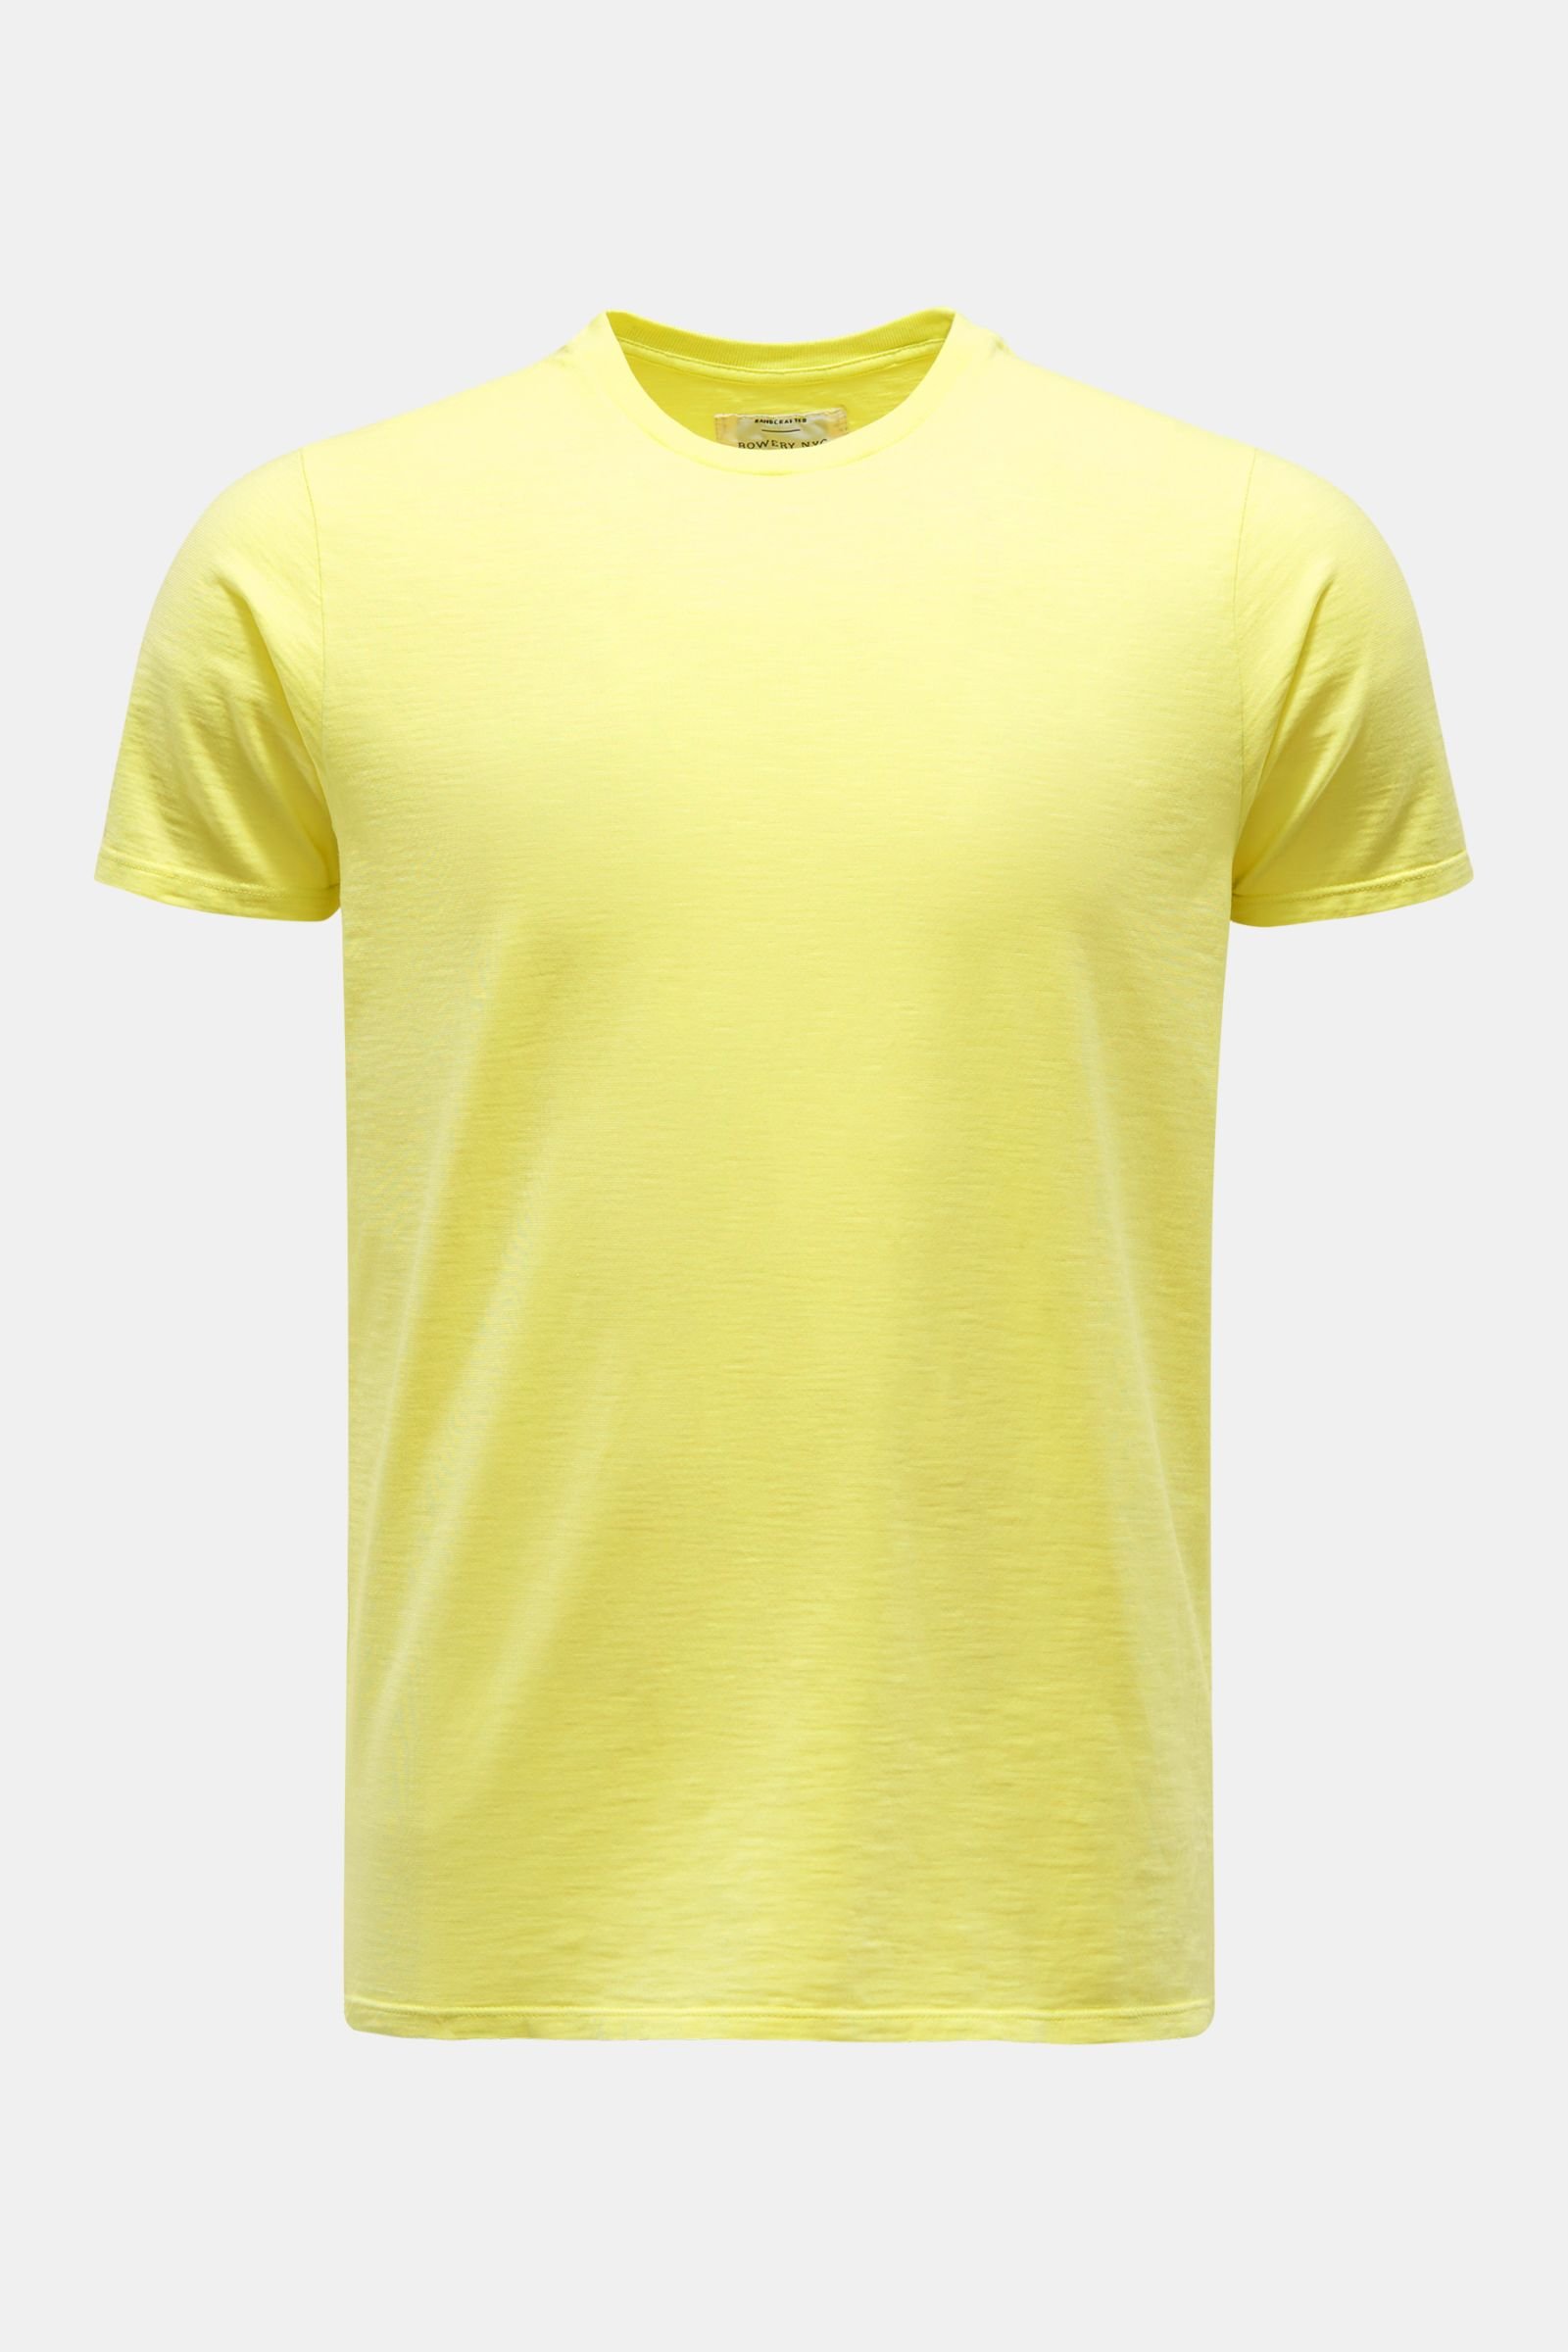 Rundhals-T-Shirt gelb